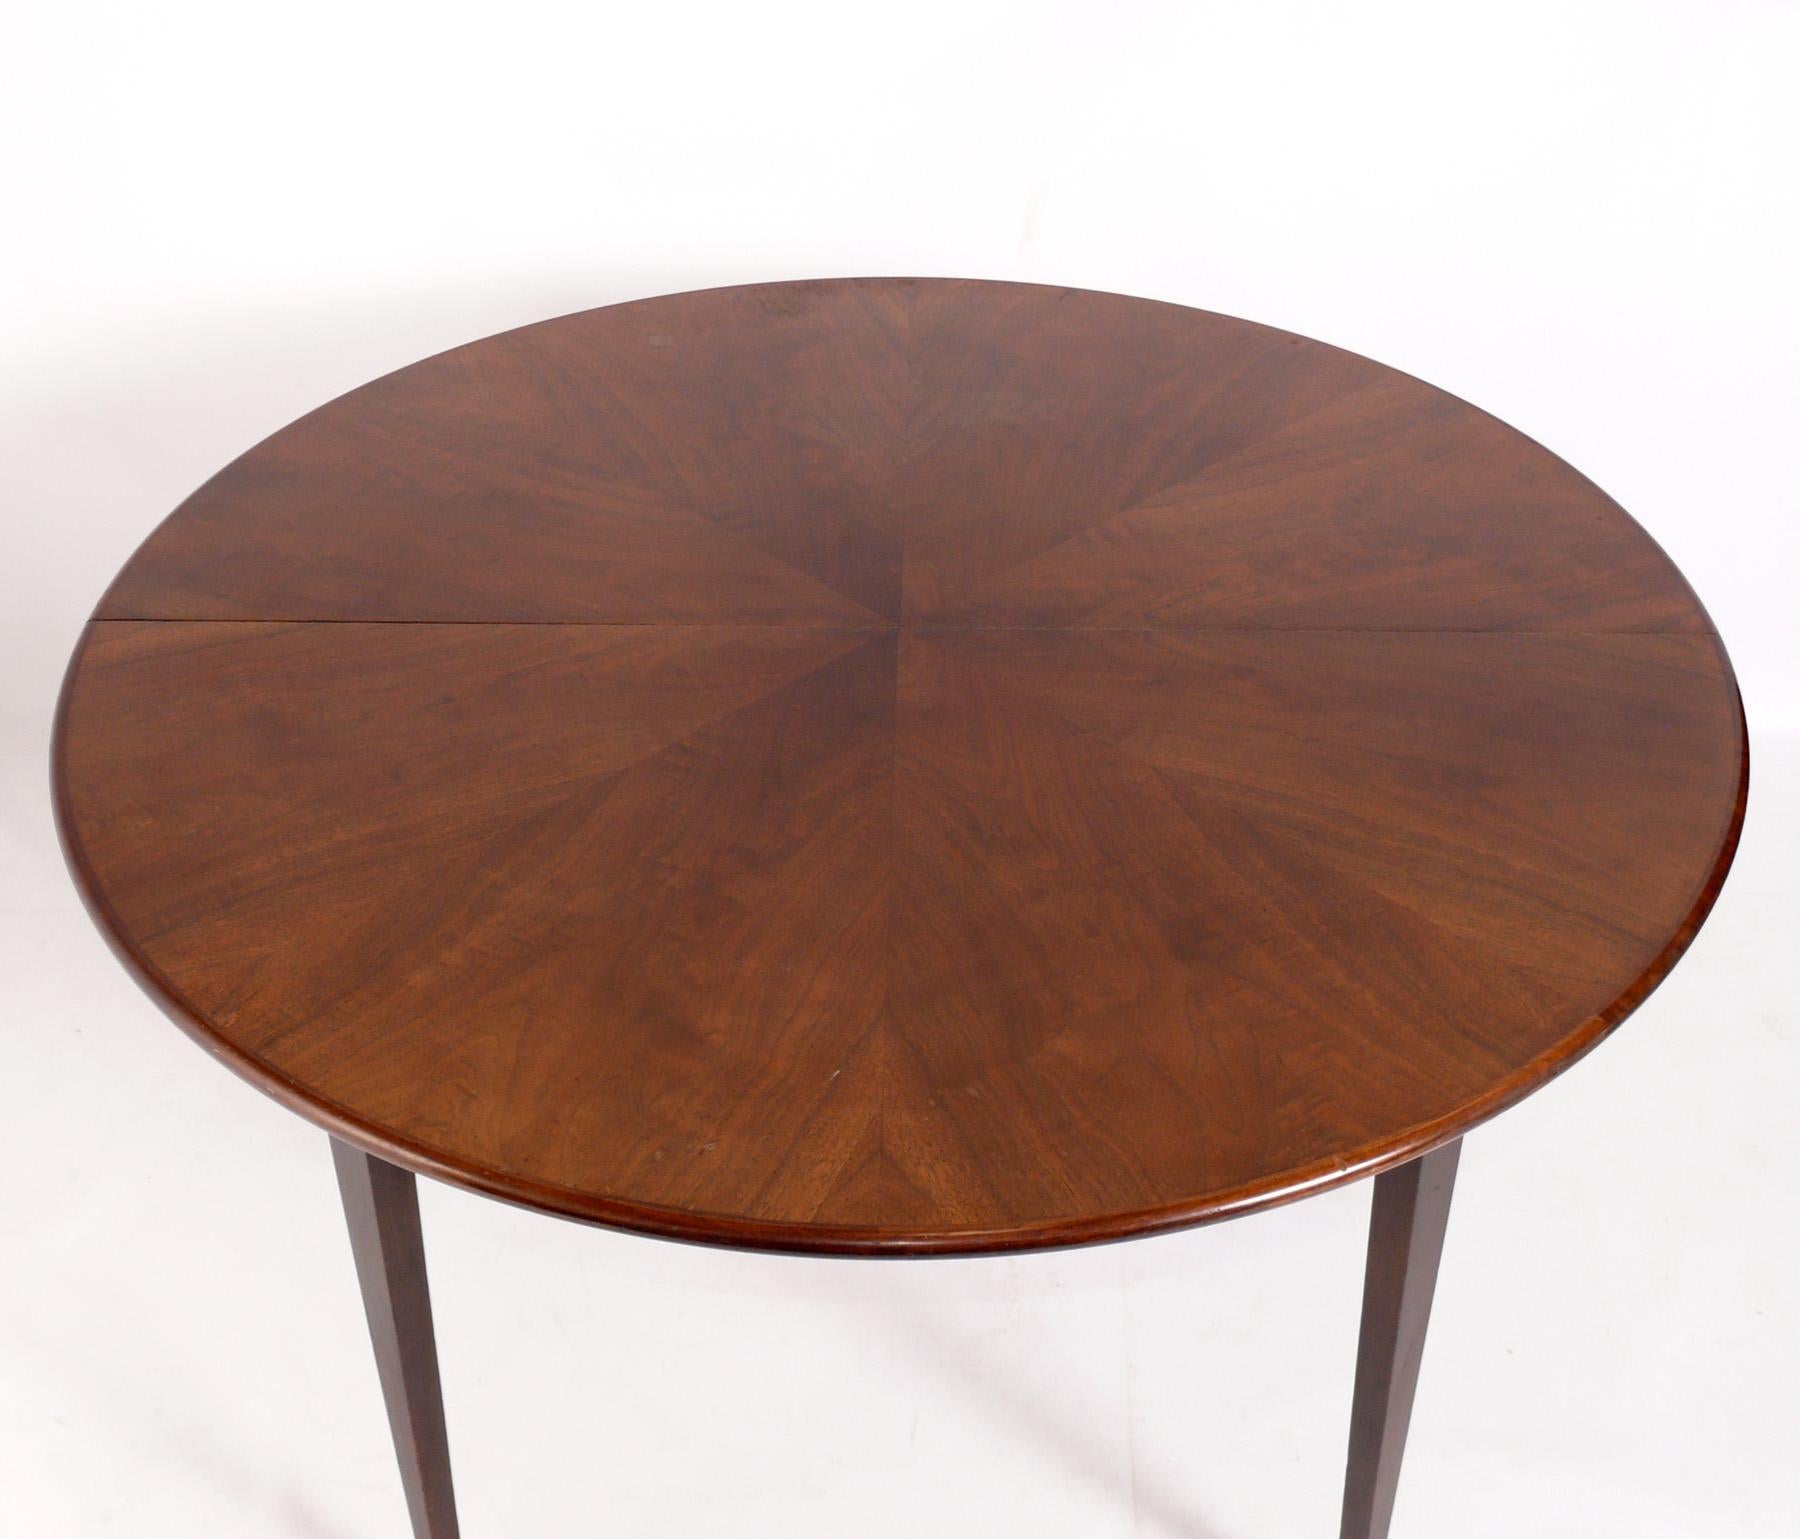 Élégante table de salle à manger du milieu du siècle, conçue par Paul McCobb pour la ligne Directional de Calvin Furniture, États-Unis, vers les années 1960. La table passe d'une table ronde de 48